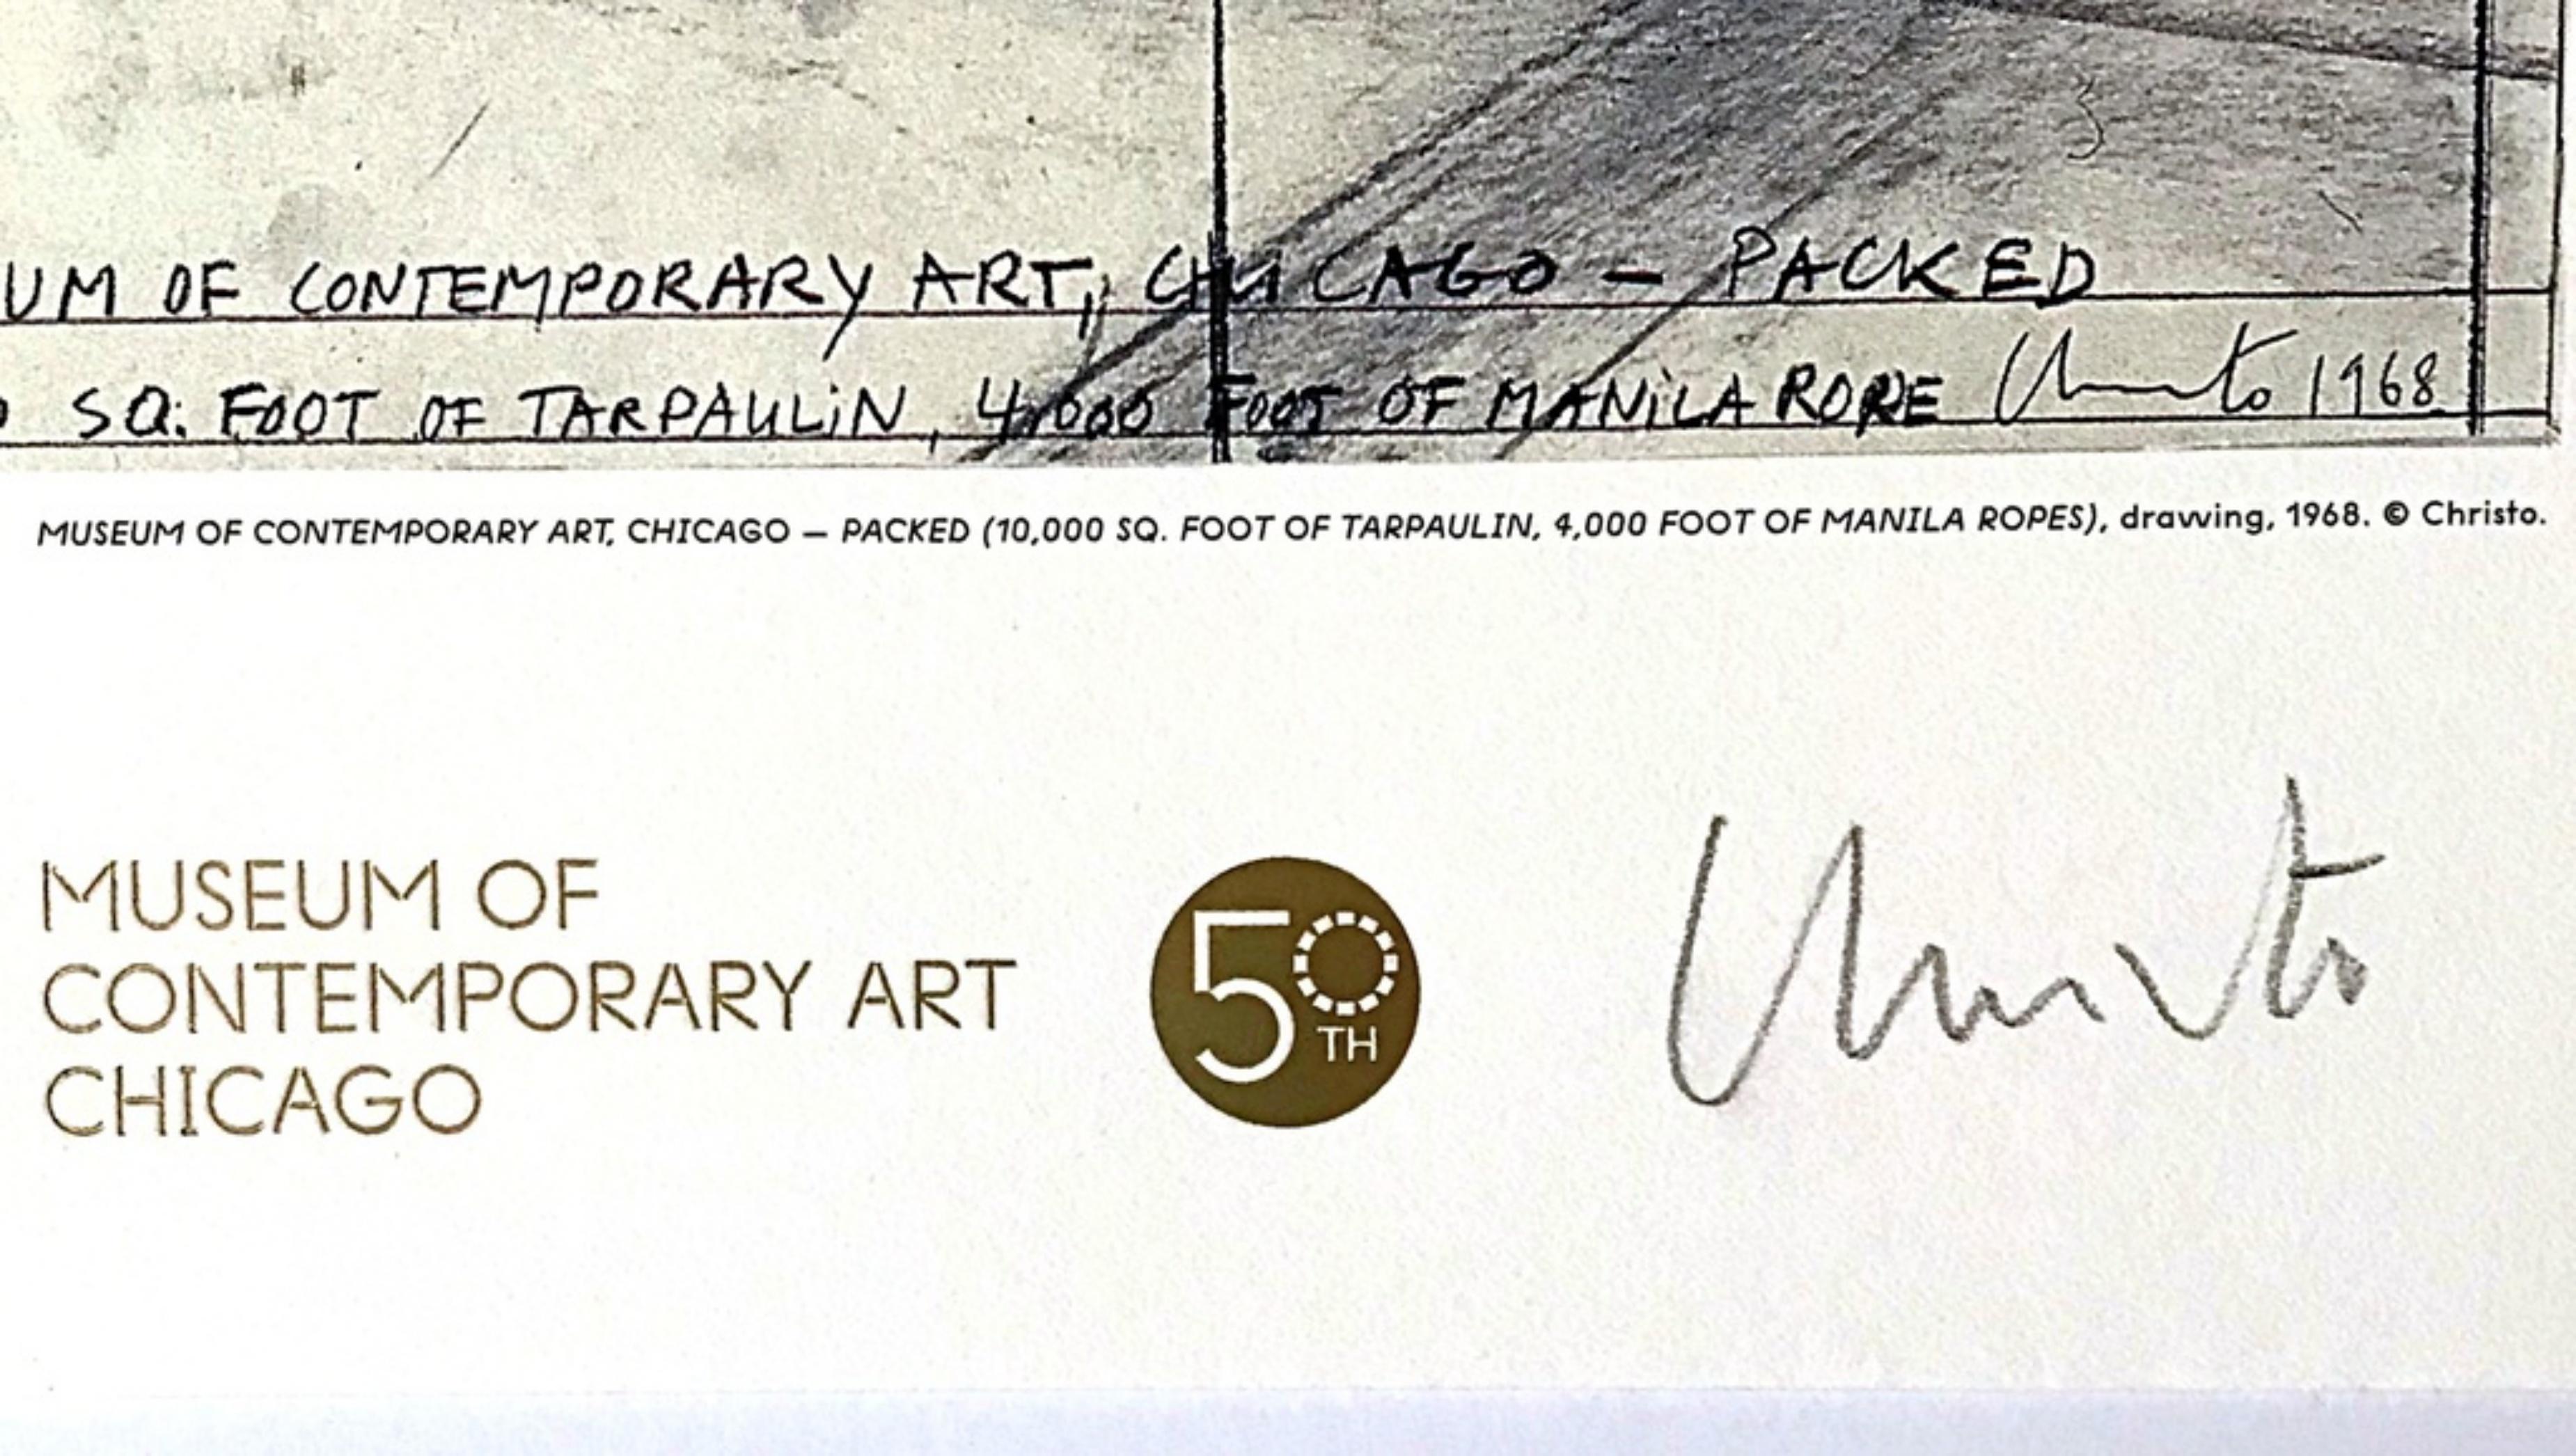 The Wrapped (MCA), Chicago 1969 (édition limitée à 200 exemplaires, signée à la main par Christo) - Pop Art Print par Christo and Jeanne-Claude